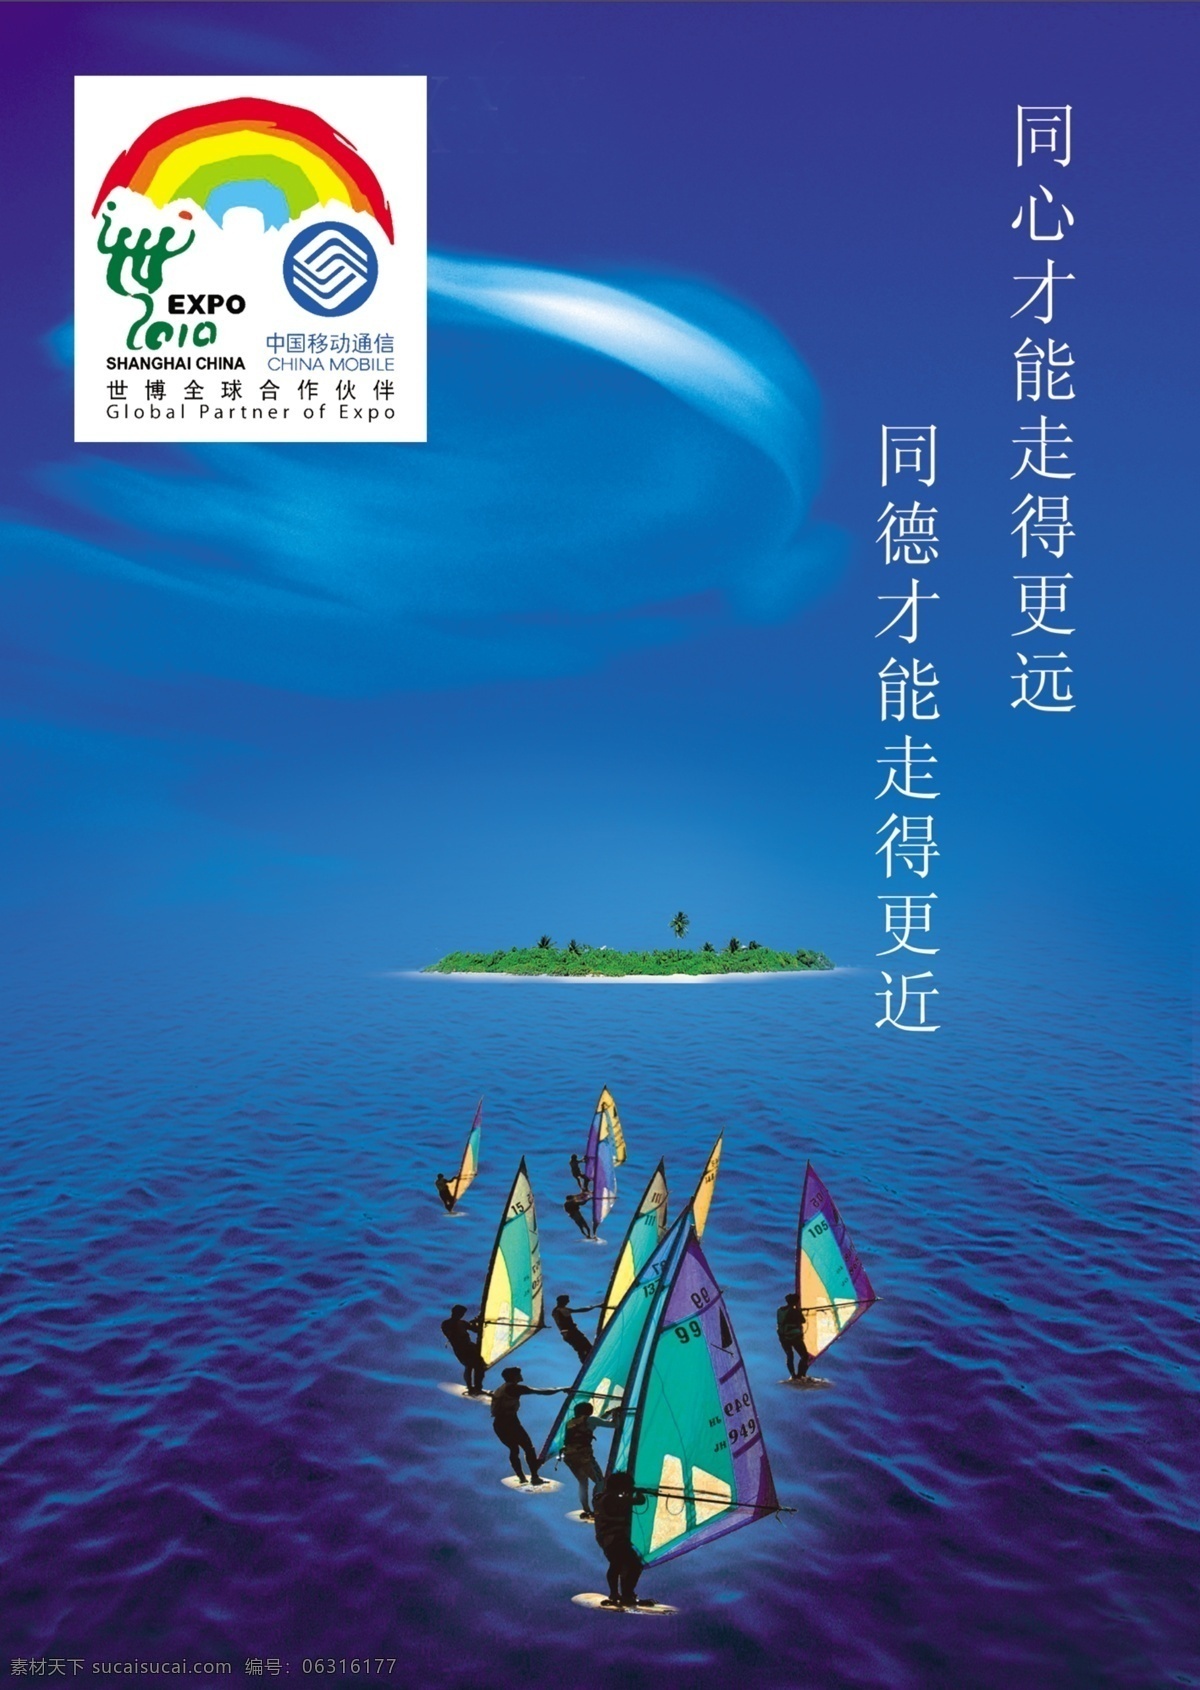 中国移动通信 精美 形象 画展 标志 蓝天白云 碧海 岛屿 帆船 冲浪 精美蓝色背景 展板设计 展板模板 广告设计模板 源文件